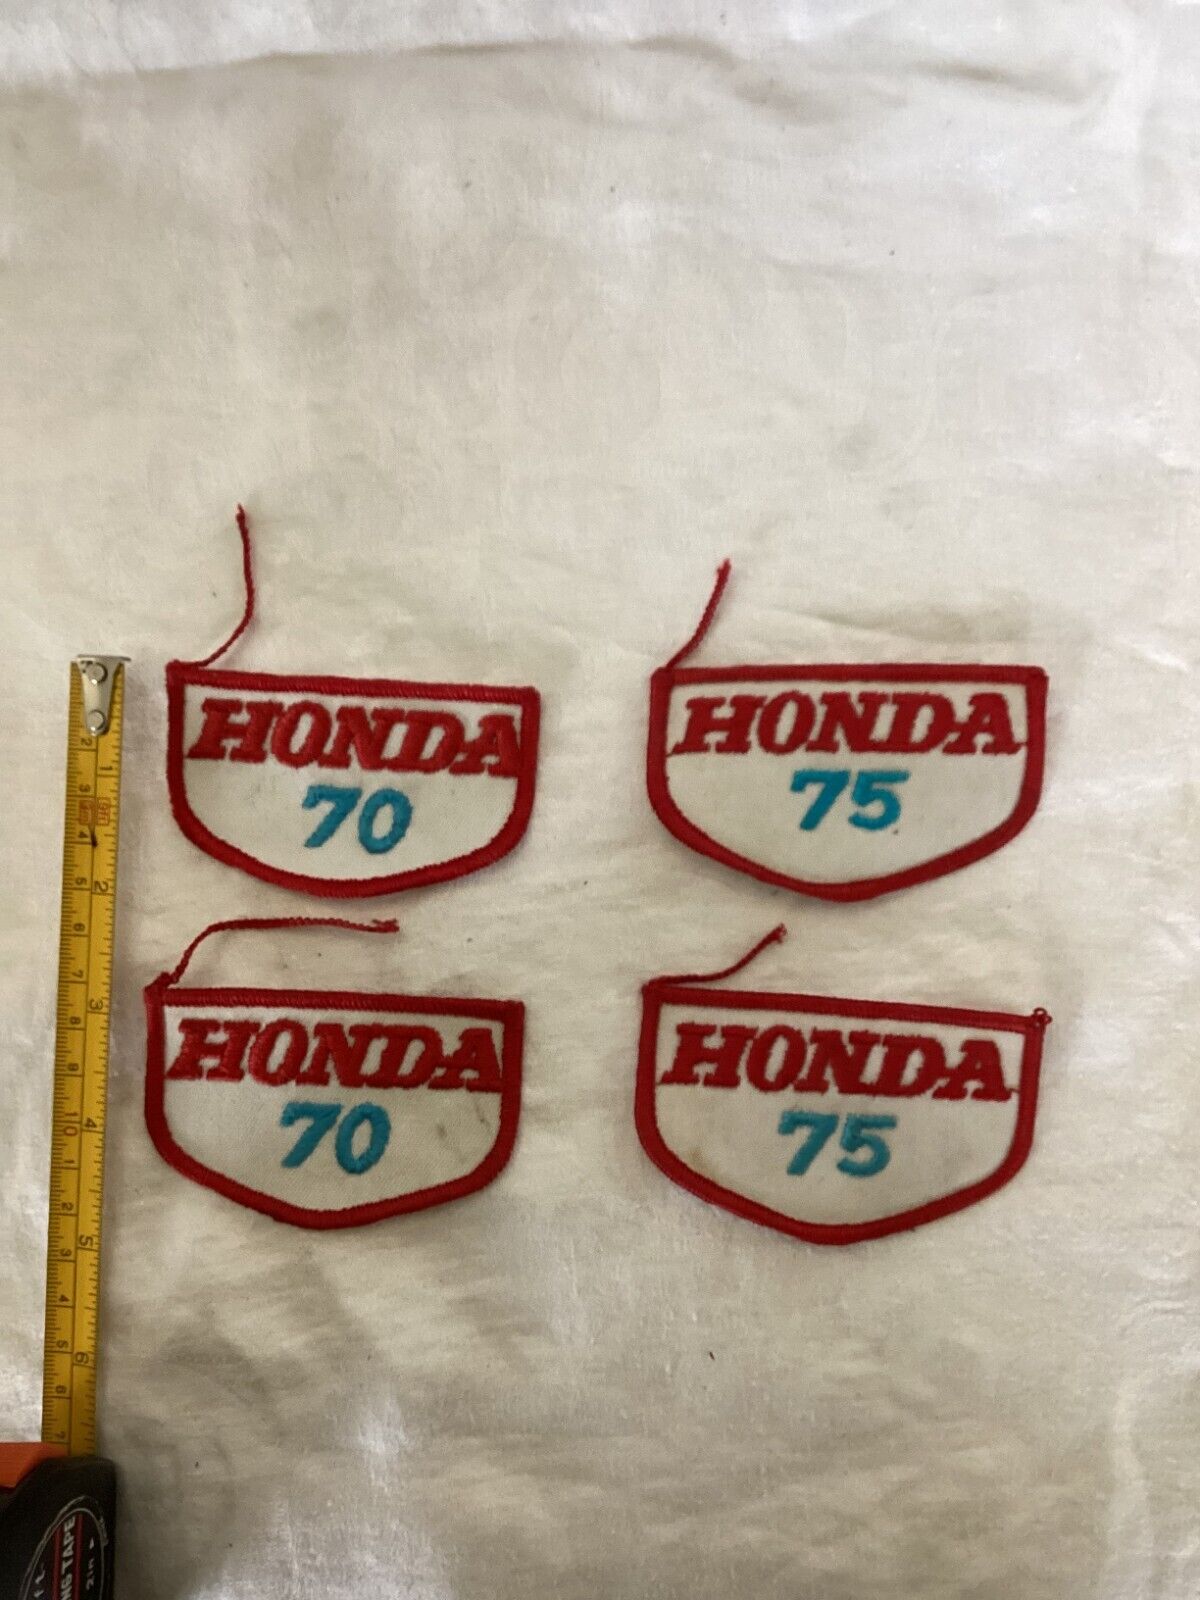 4 Vintage Honda Motorcycle Patches -- Honda 70 and Honda 75